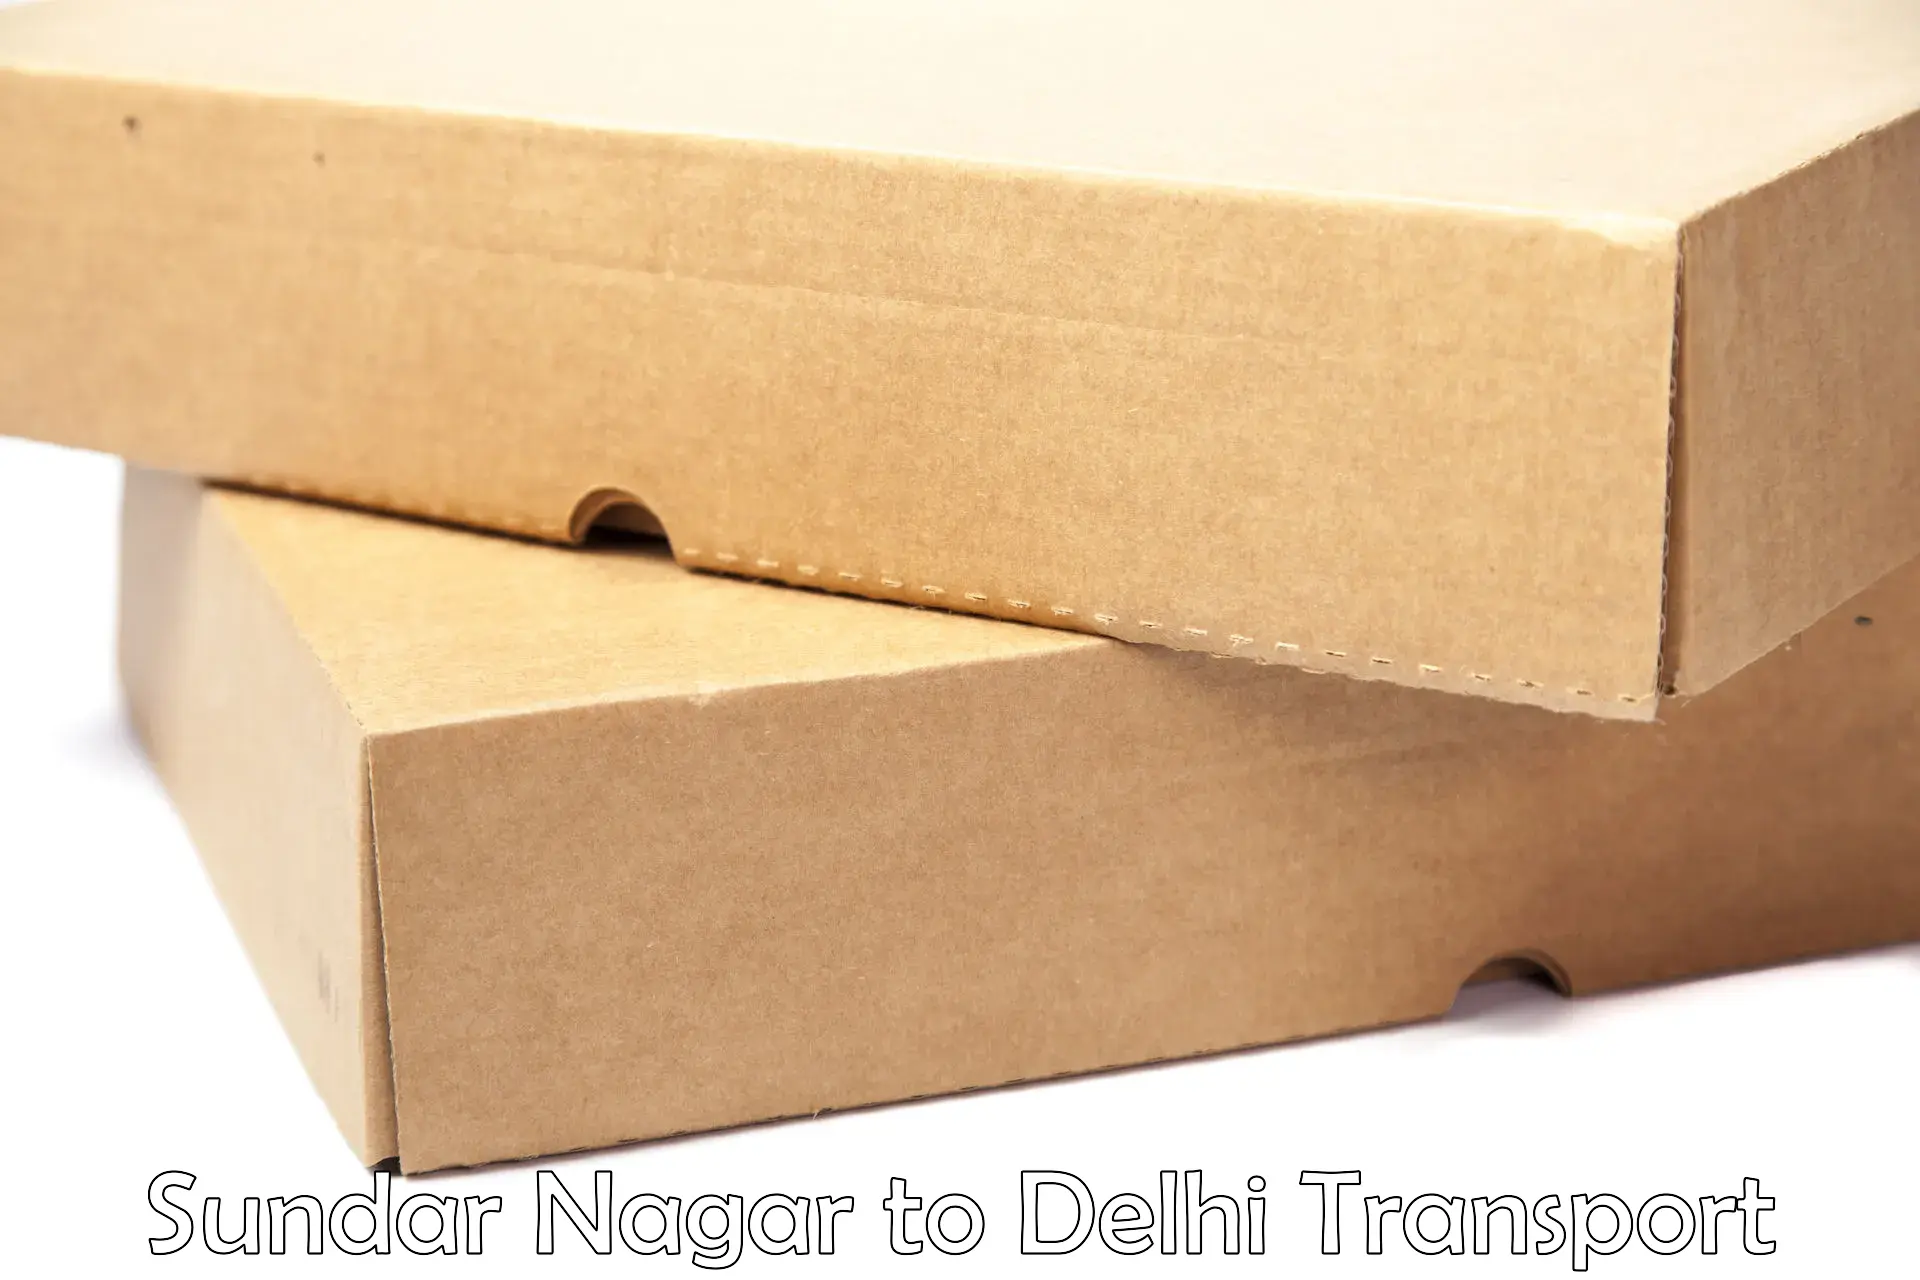 Domestic goods transportation services in Sundar Nagar to NIT Delhi